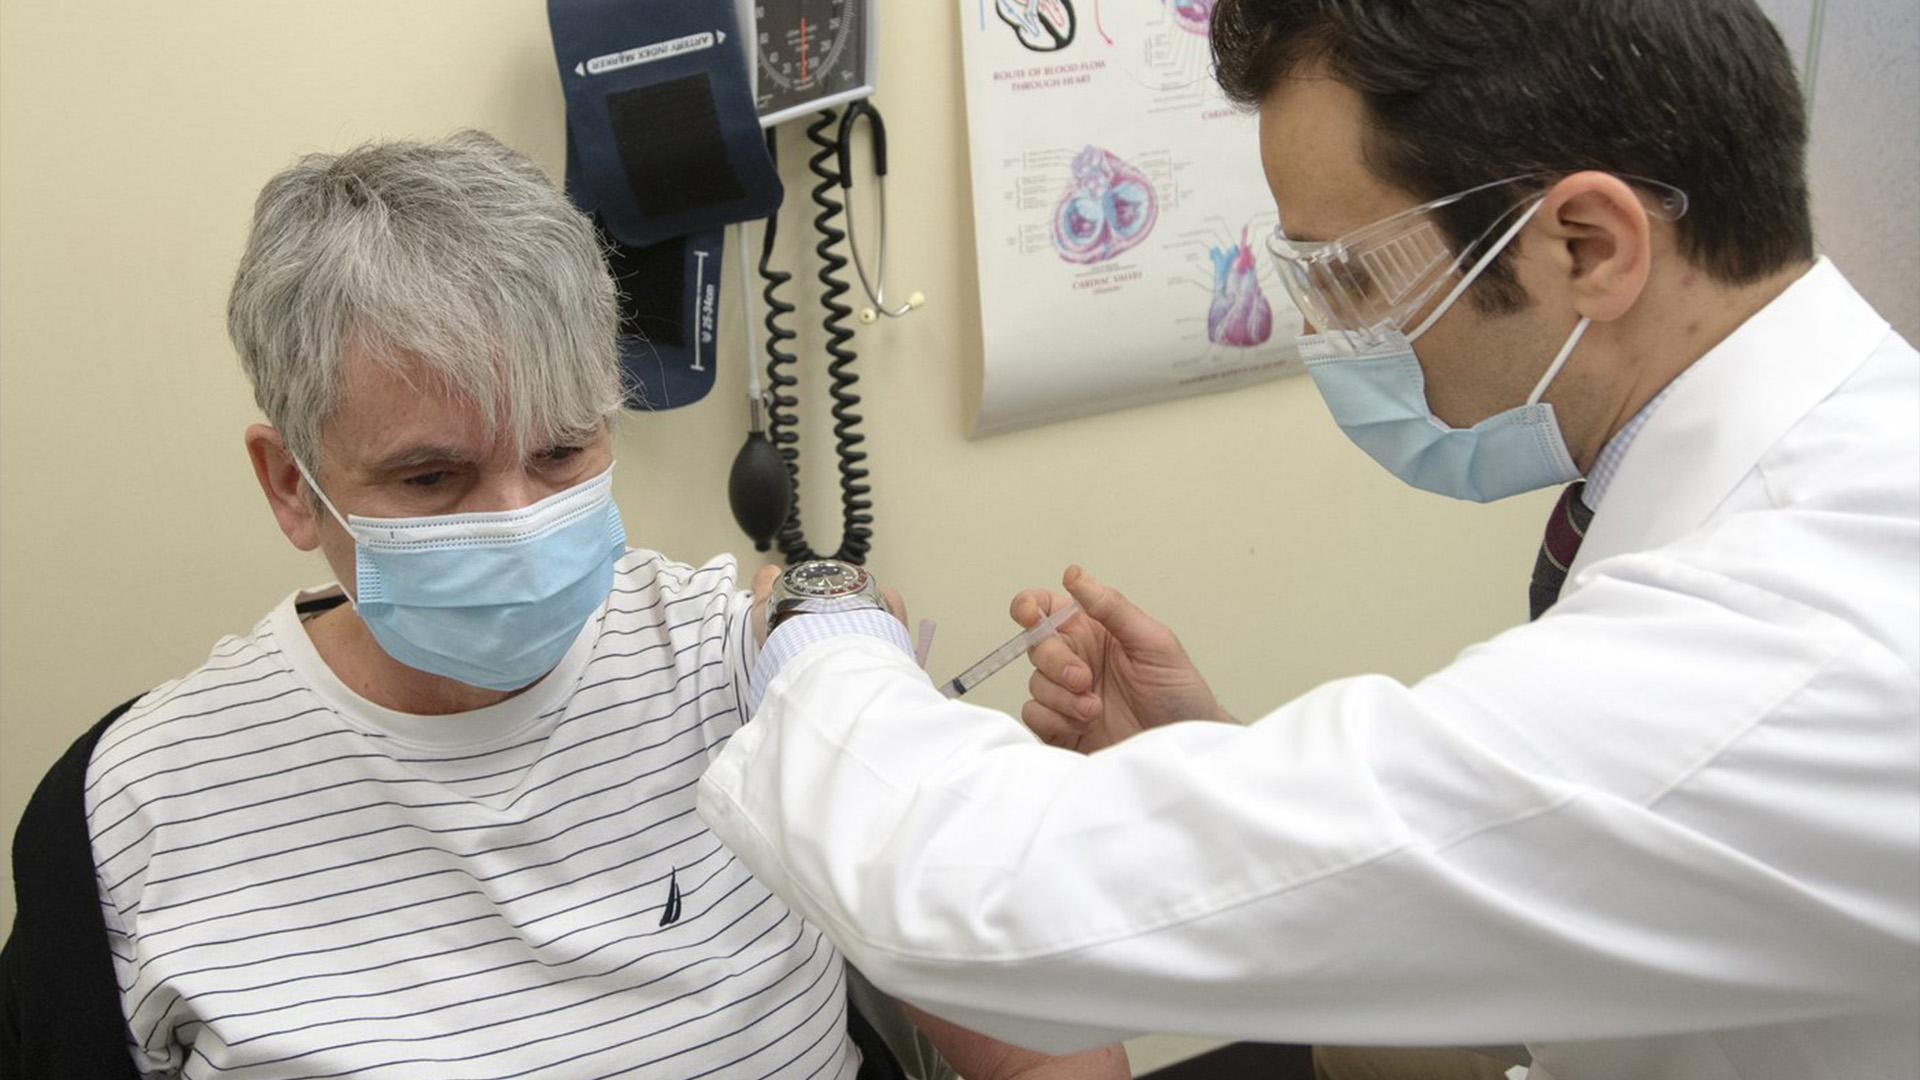 Des médecins canadiens affirment que la propagation de l’influenza commence à toucher davantage les personnes âgées, car les données de surveillance indiquent que le taux d'hospitalisation des aînés s’approche de celui des enfants. 